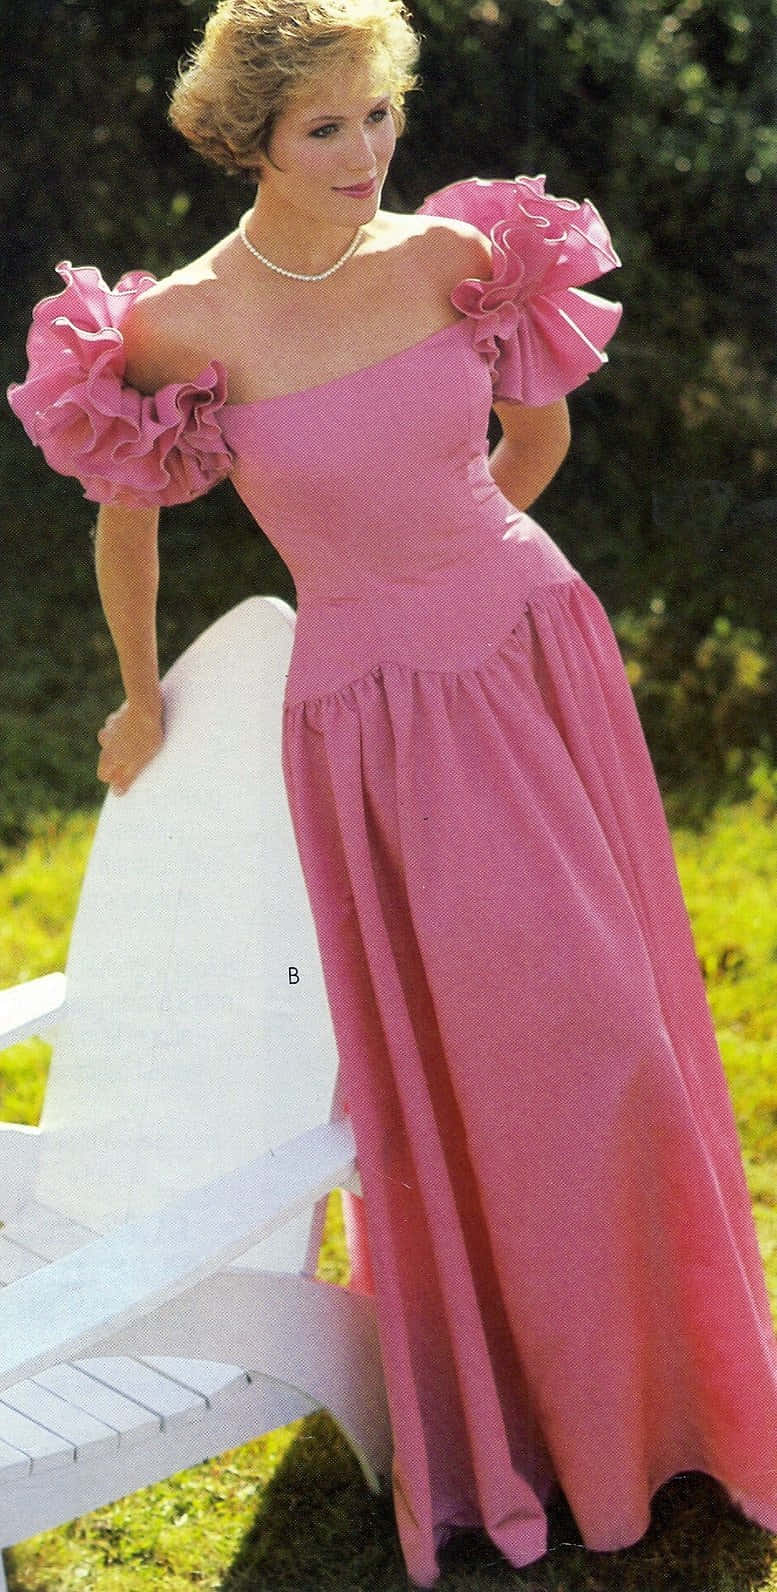 Imagende Mujer En Vestido Rosa Estético De Los 80 En Una Silla